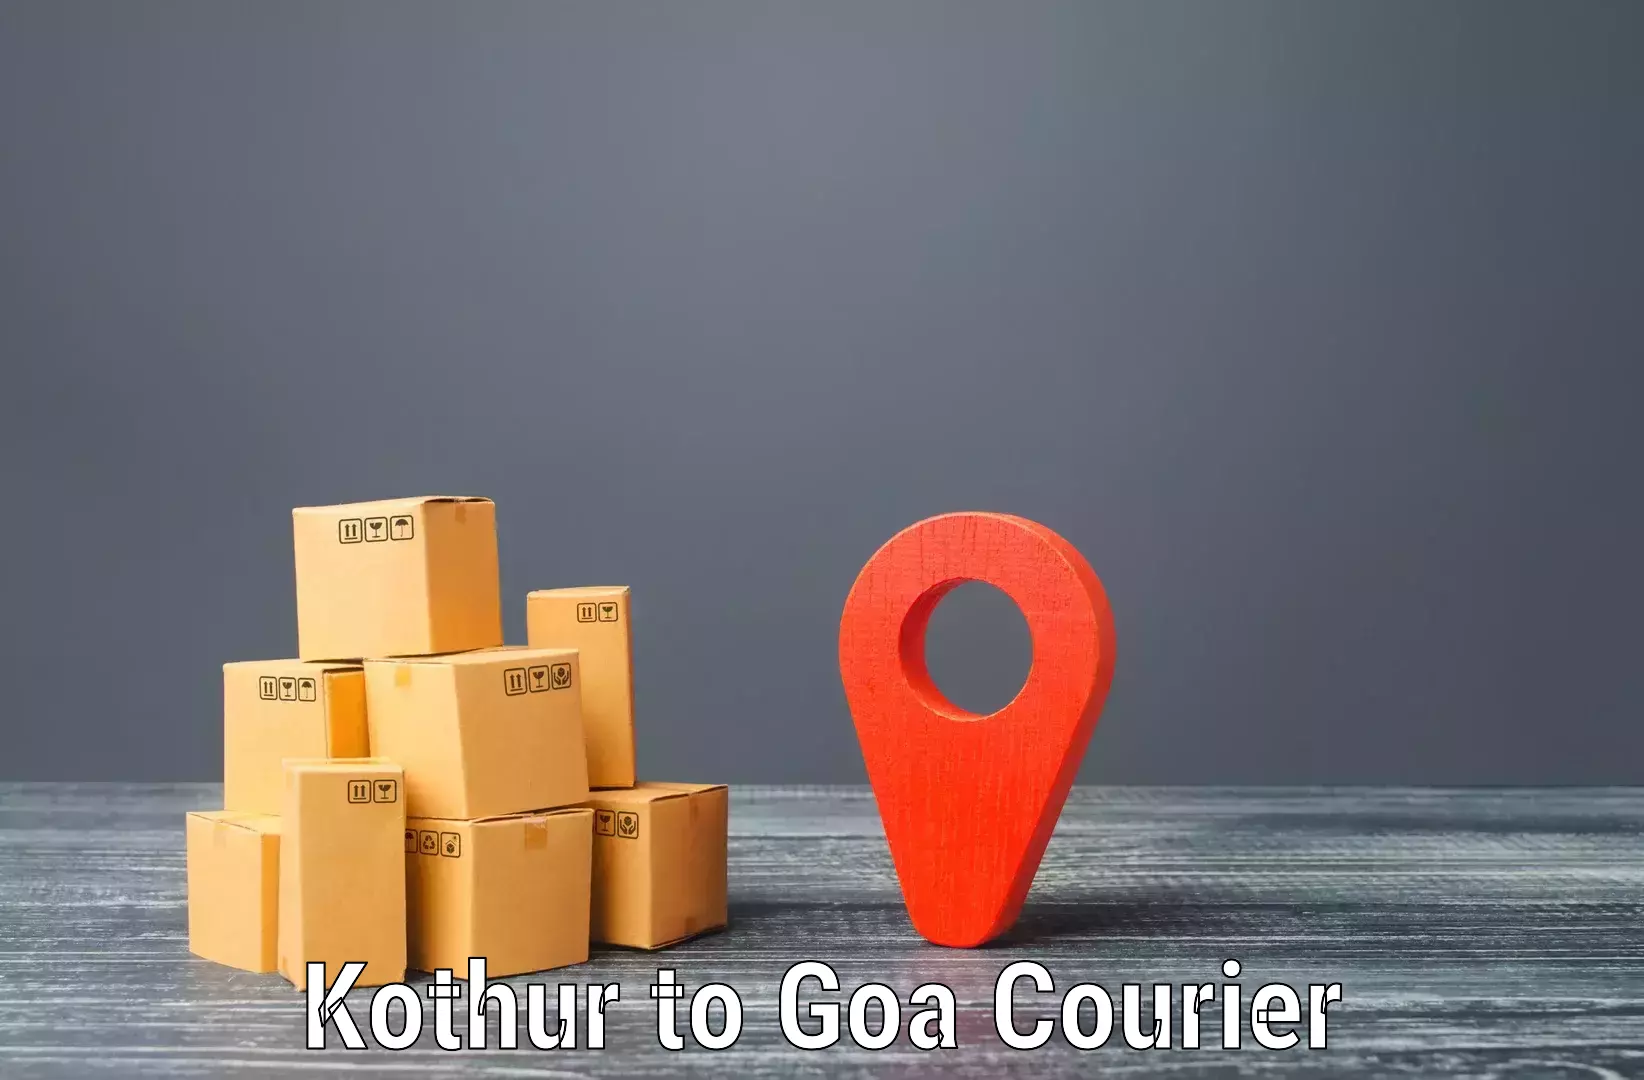 Courier service comparison Kothur to Bicholim